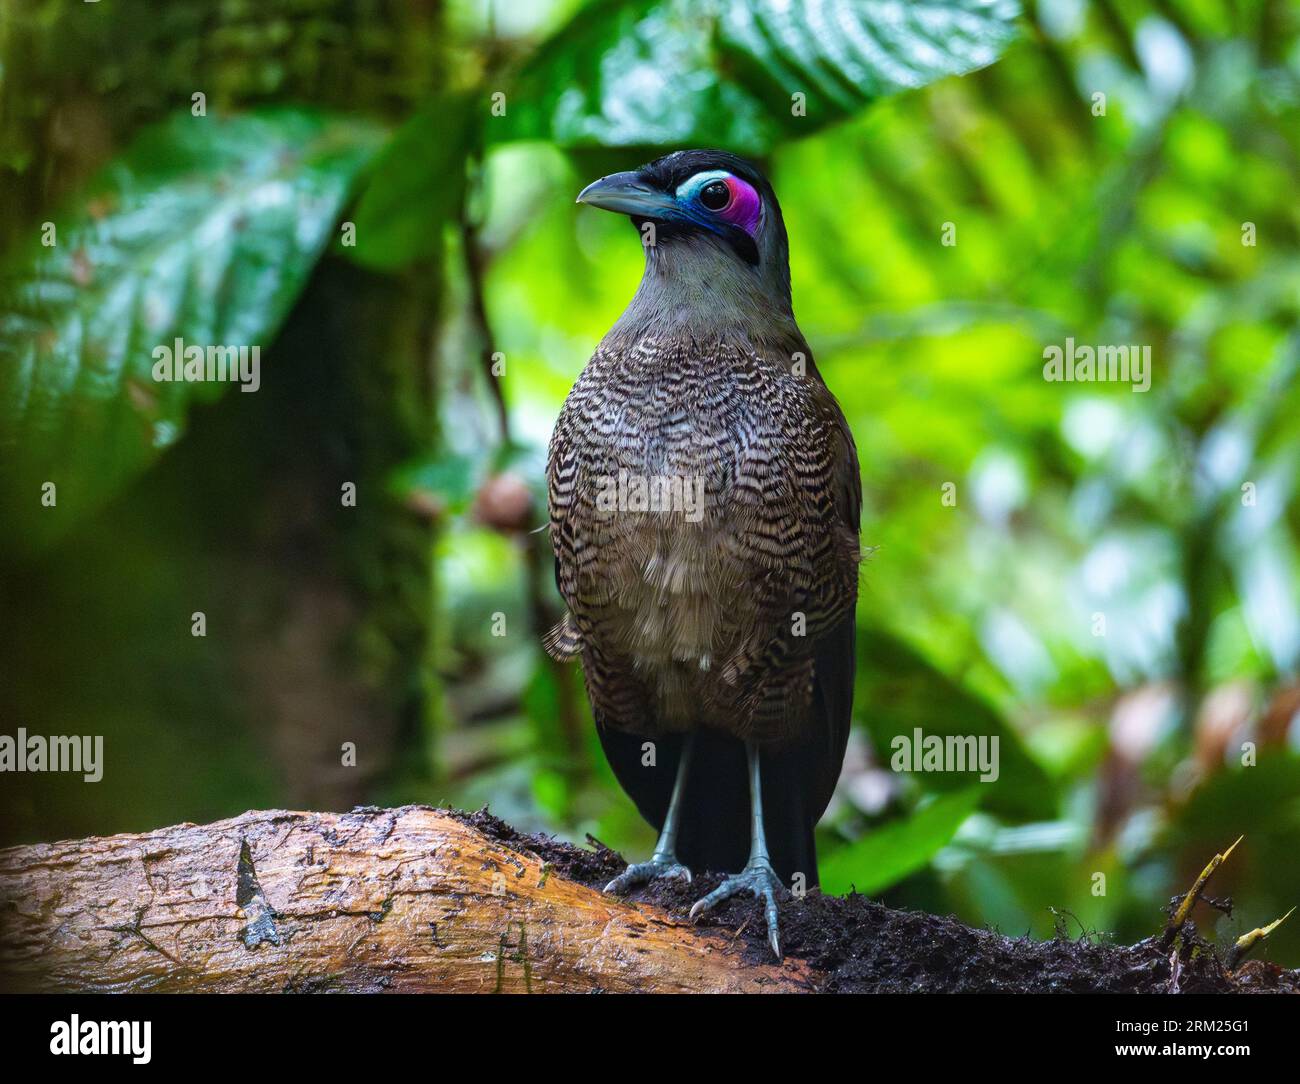 Ein vom Aussterben bedrohter Sumatra-Ground-Cuckoo (Carpococcyx viridis) in seinem natürlichen Lebensraum. Sumatra, Indonesien. Stockfoto